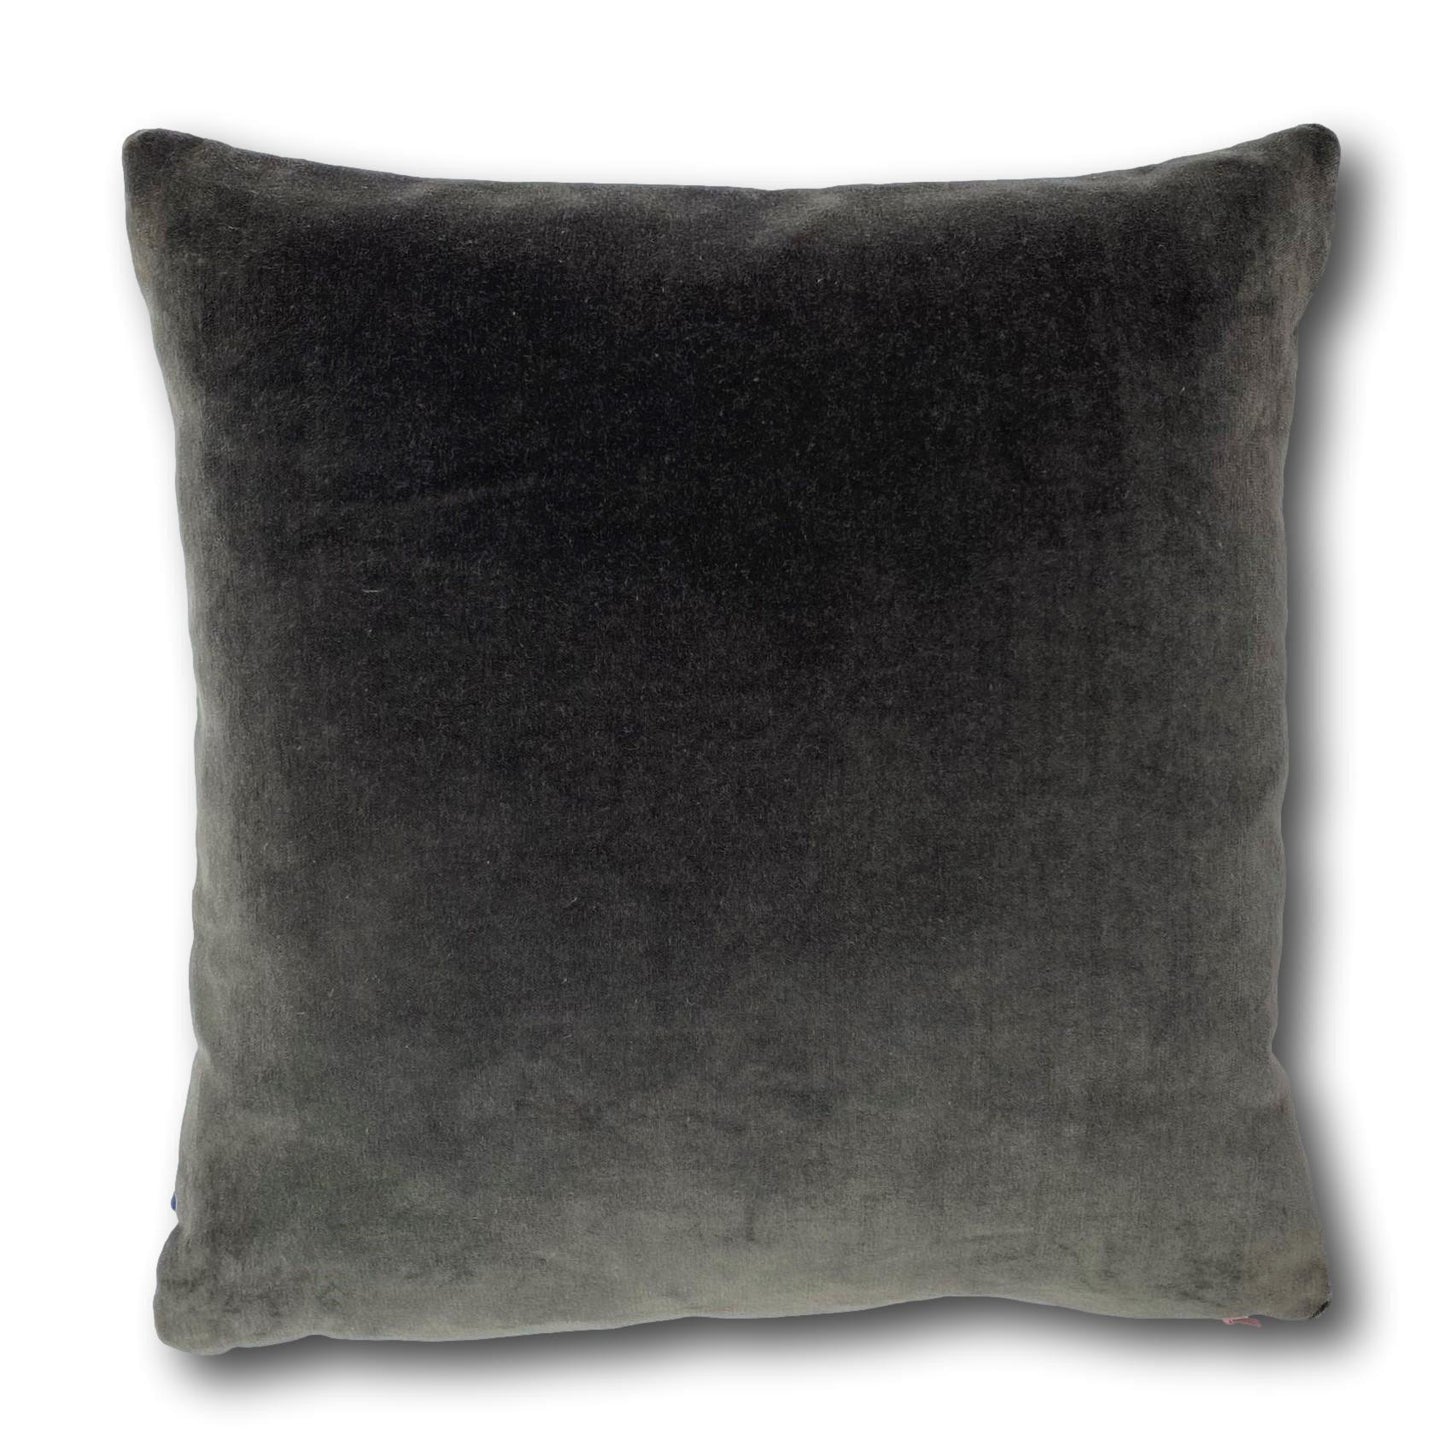 silver grey cushion